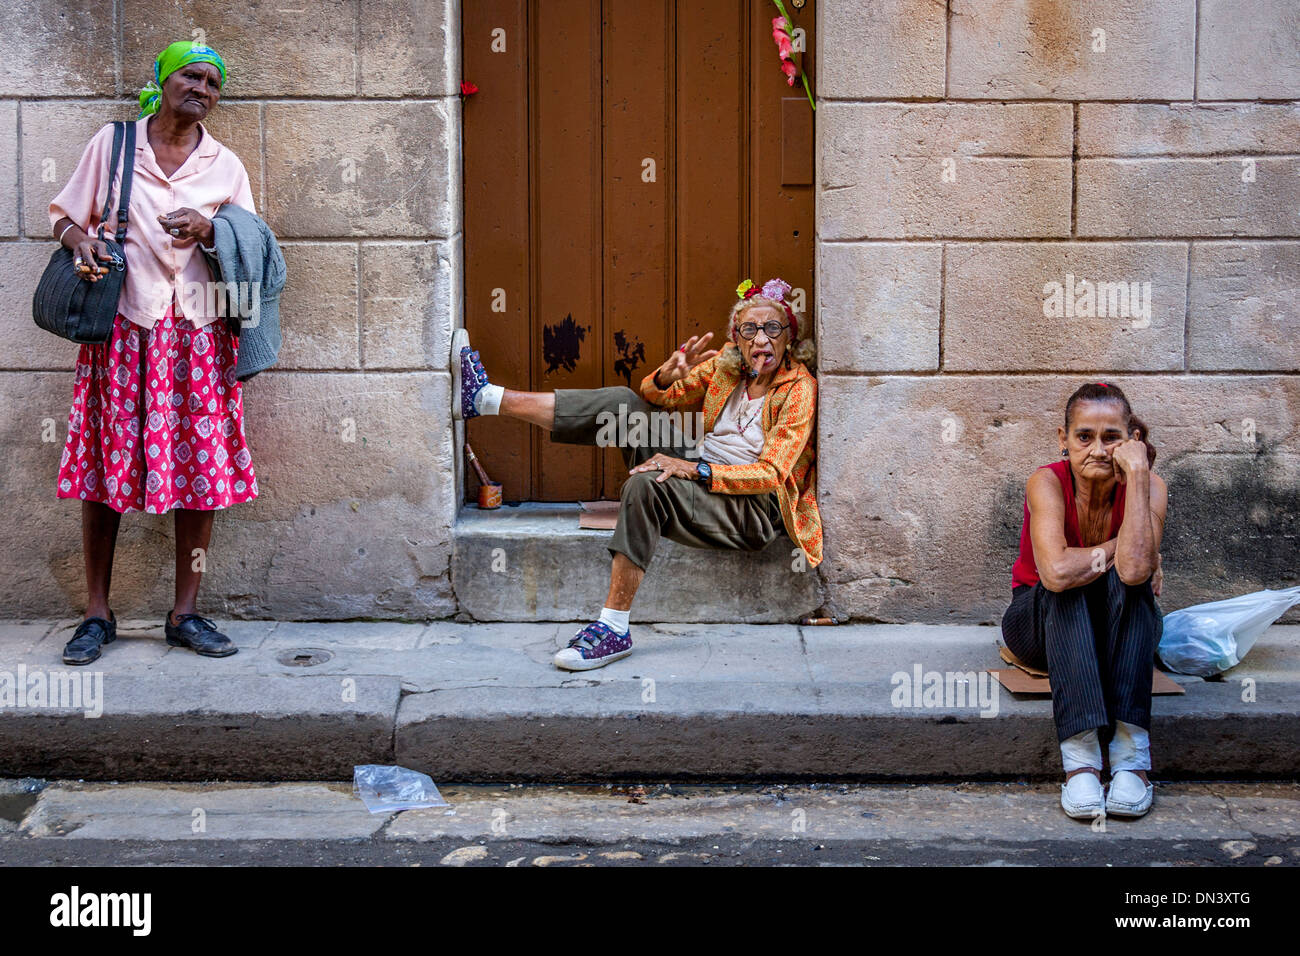 Street Scene, Old Havana, Havana, Cuba Stock Photo